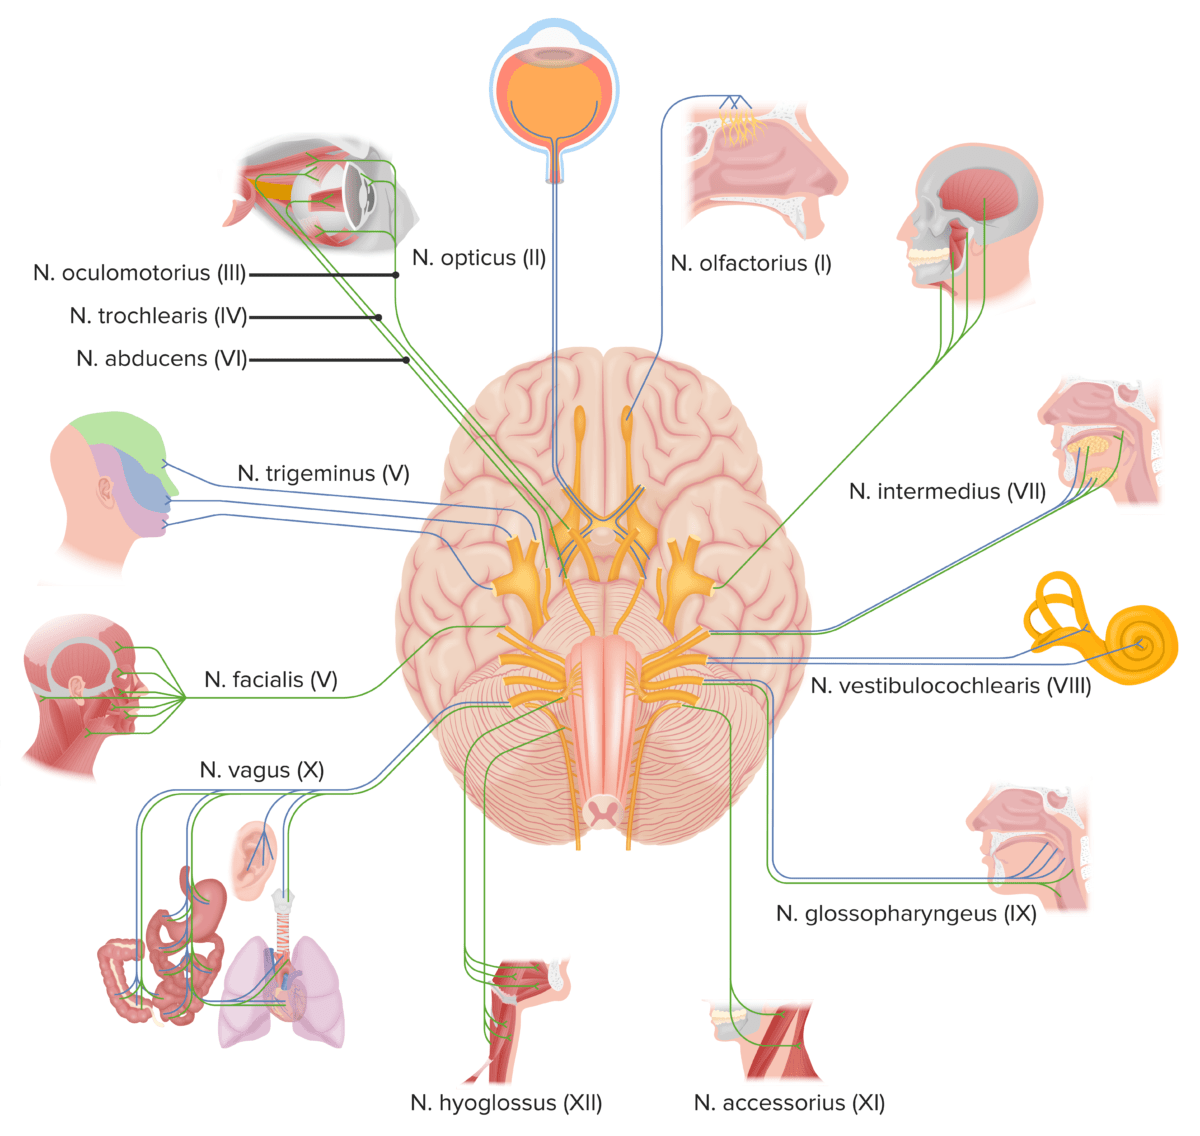 Os nervos cranianos